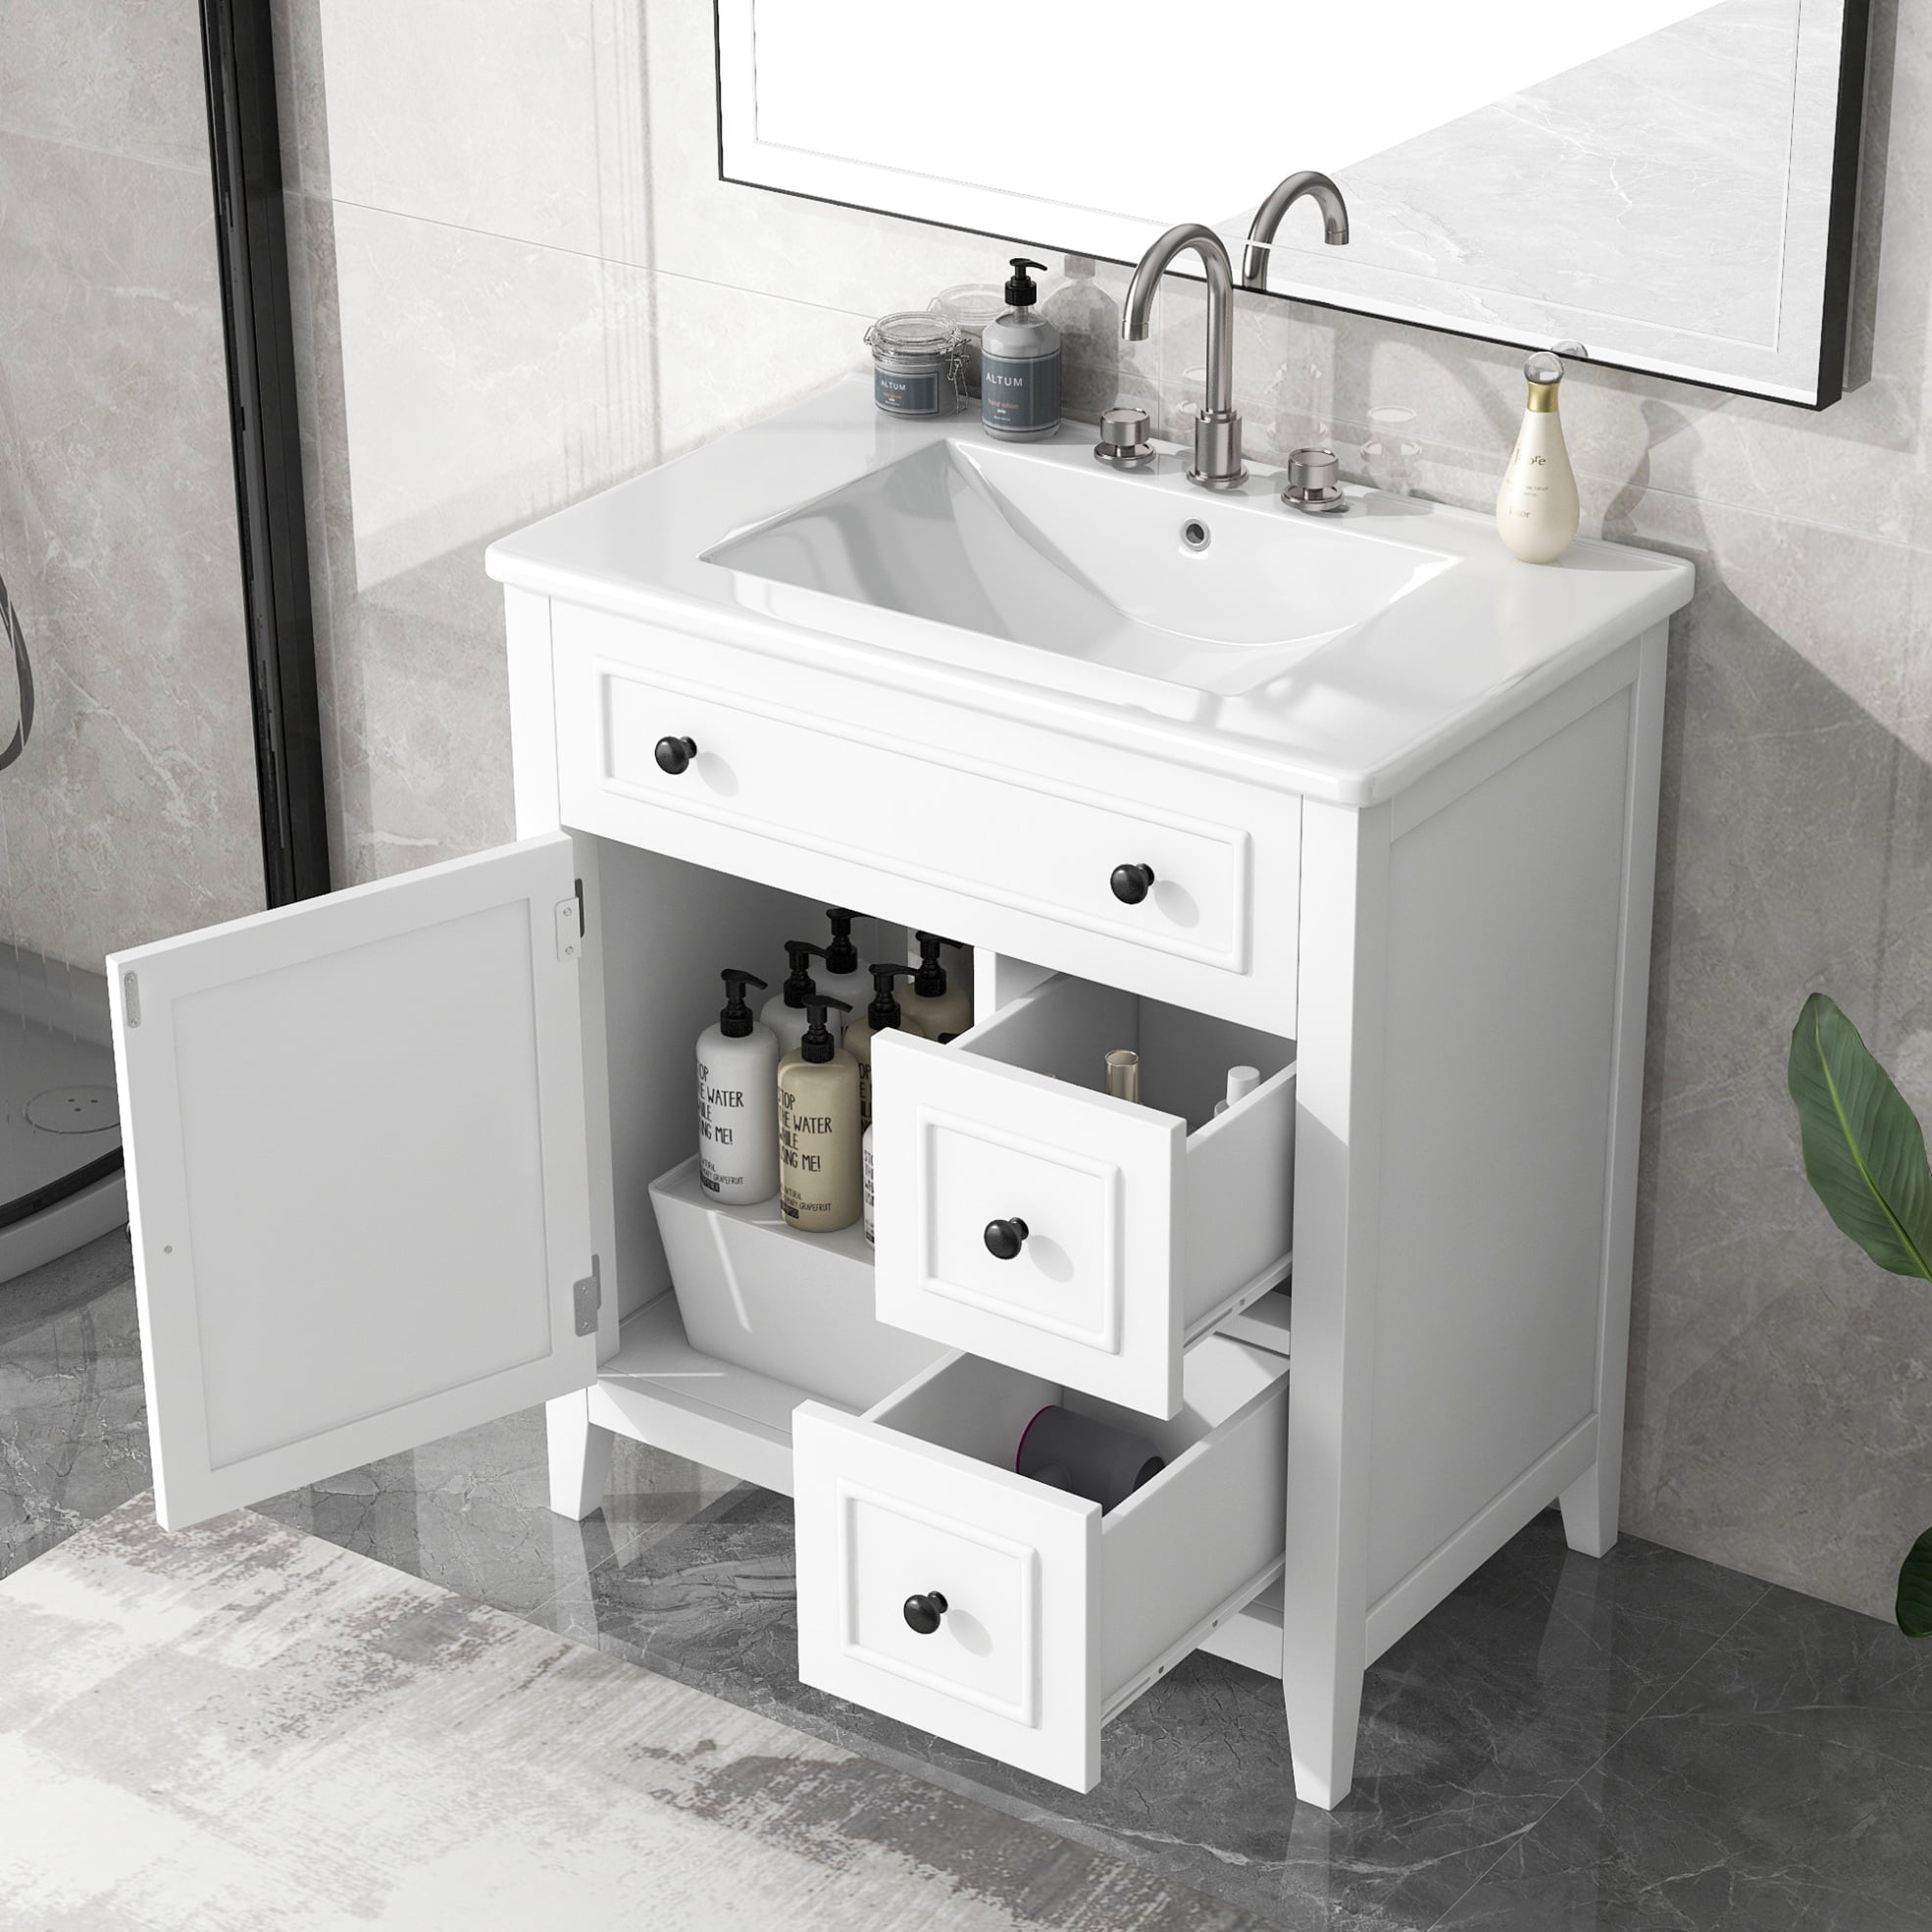 30 inch Bathroom Vanity with Sink, Bathroom Sink Vanity with Storage ...